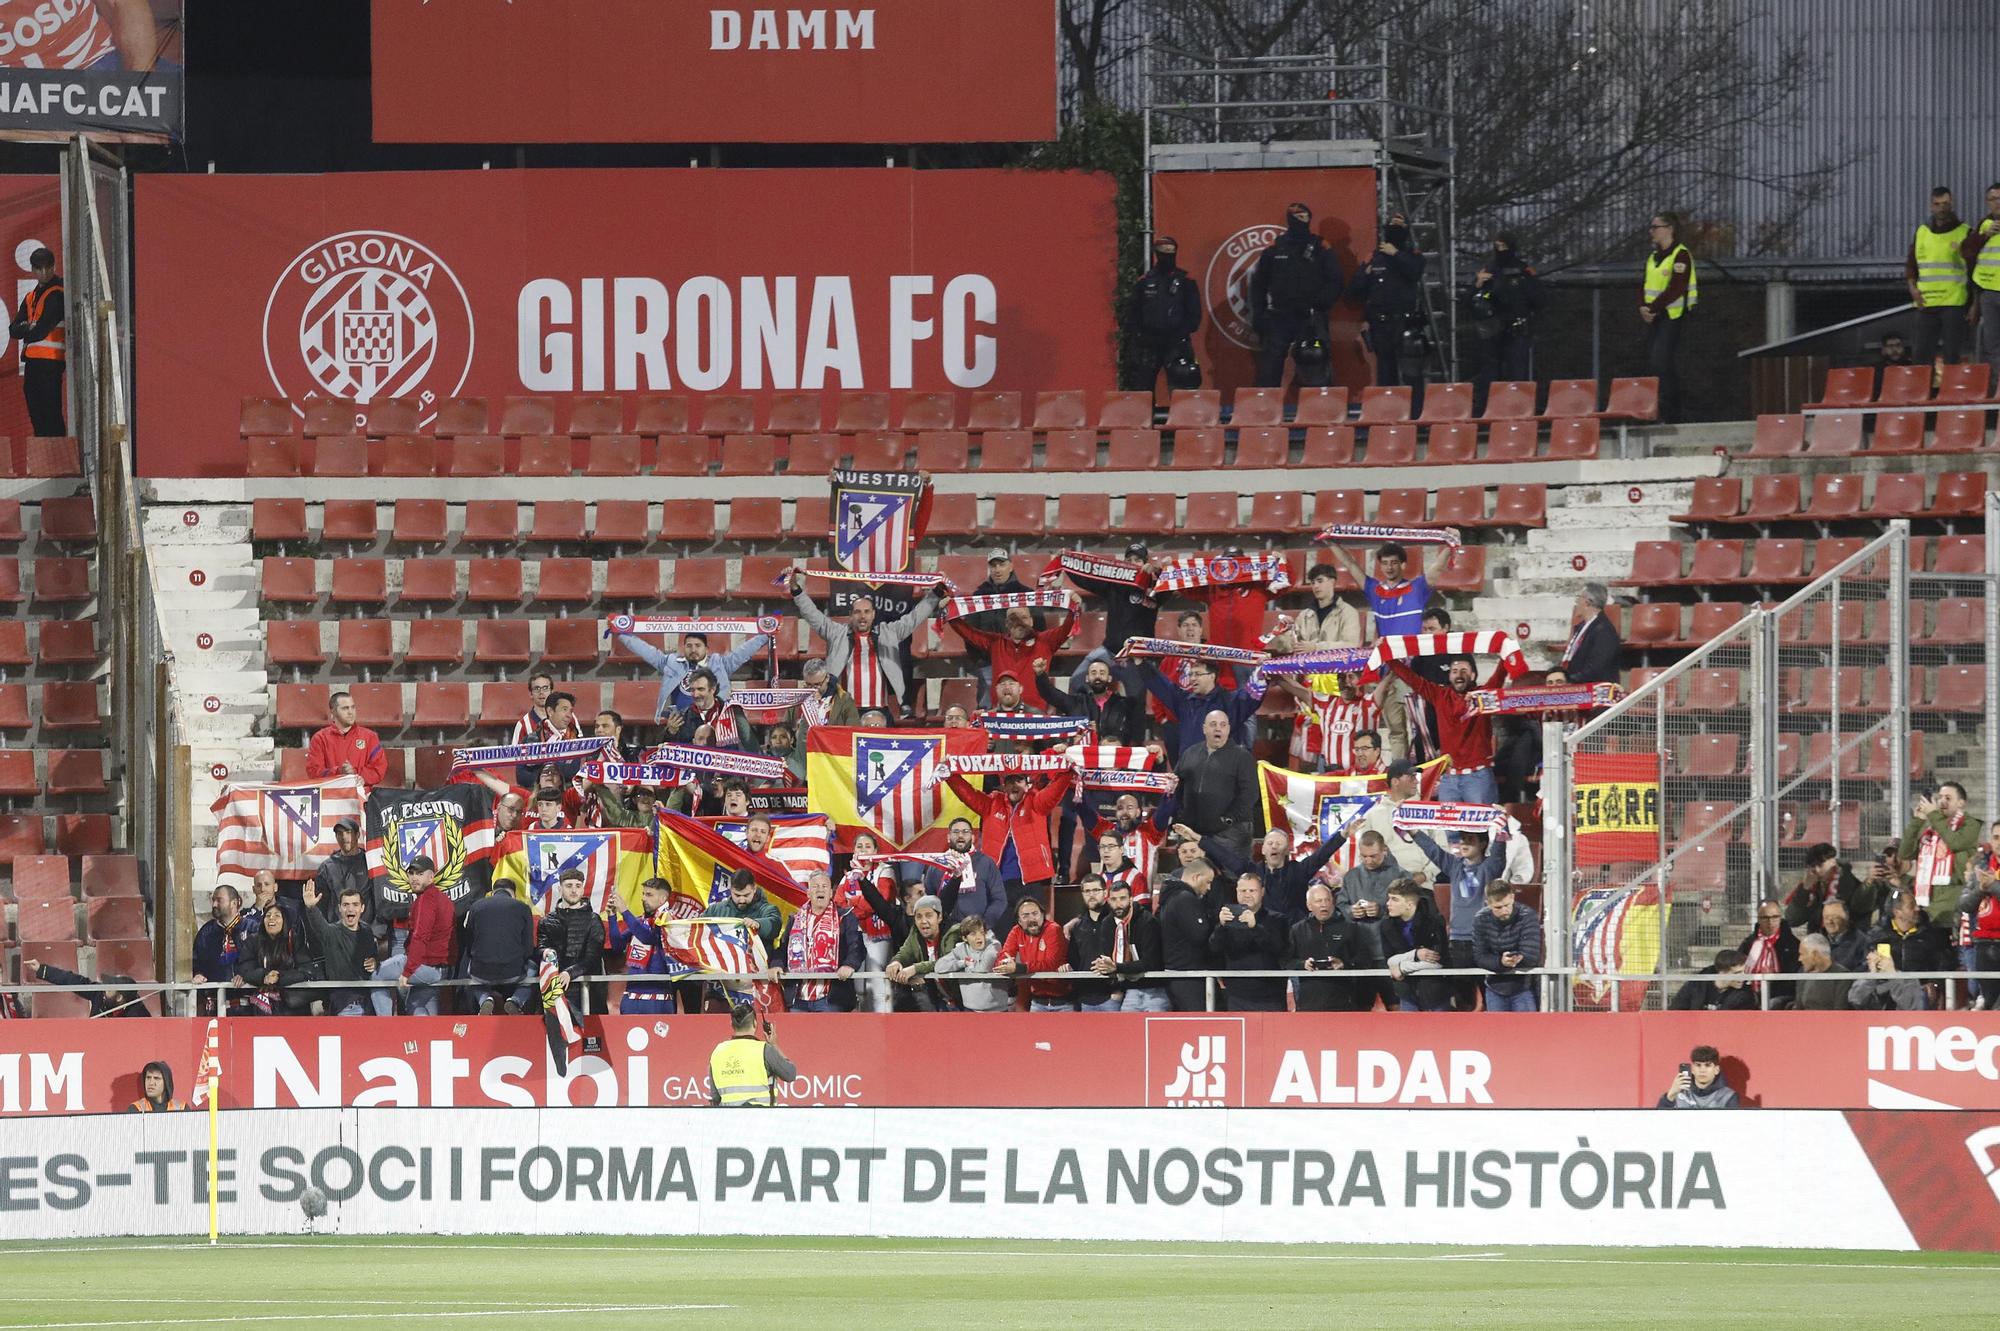 Les millors imatges del Girona - Atlètic de Madrid